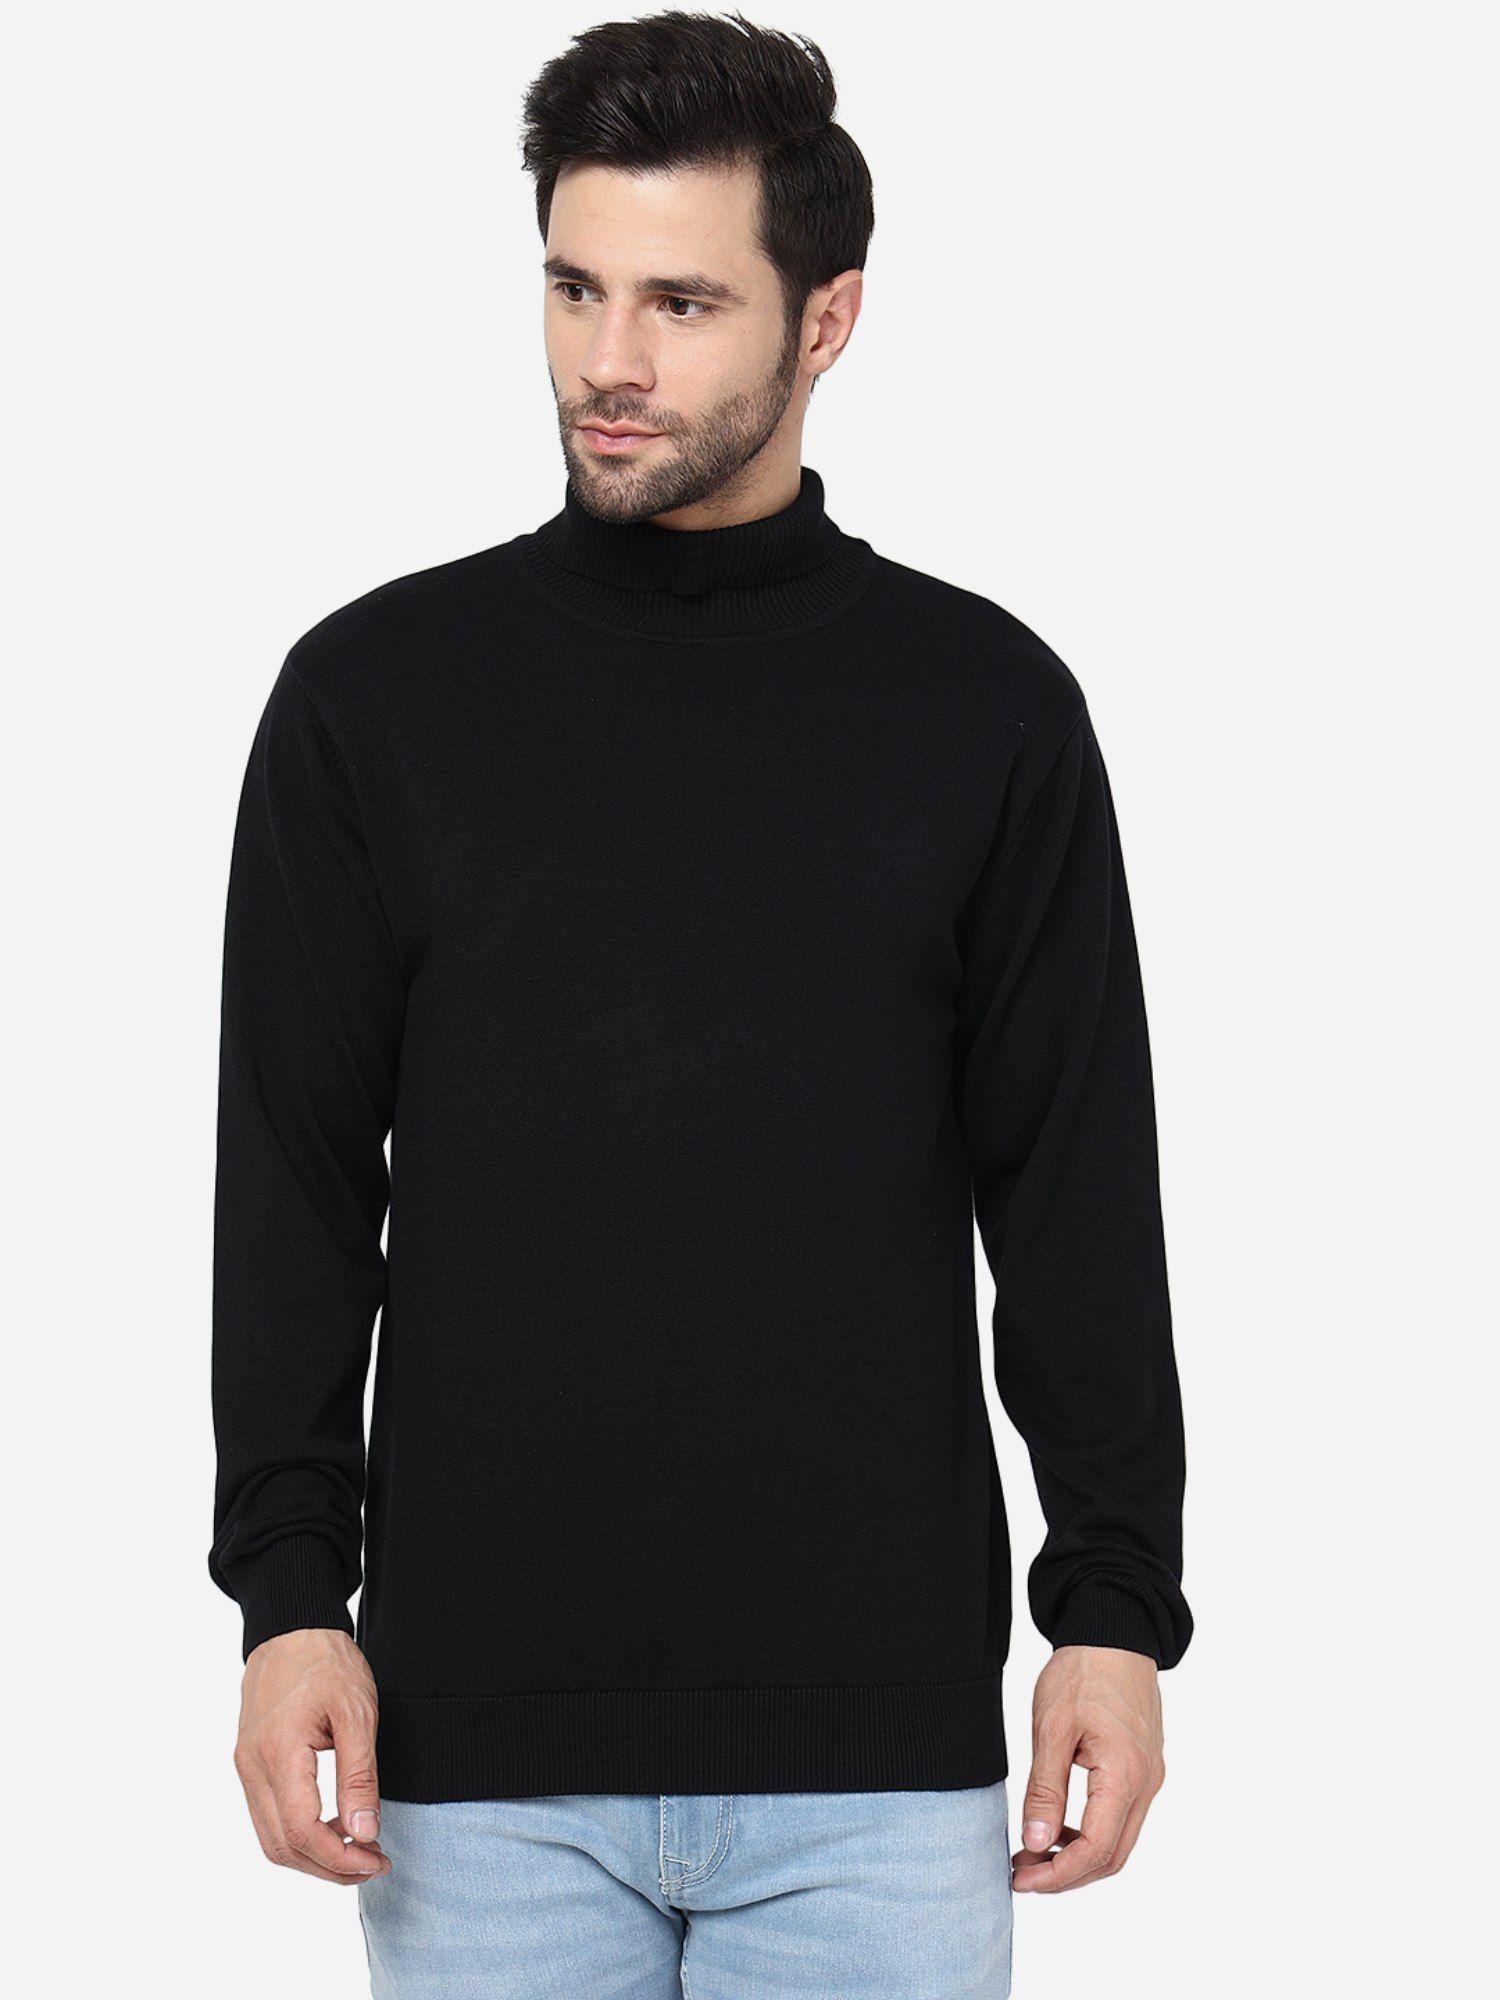 mens solid black slim fit full sleeve sweatshirt